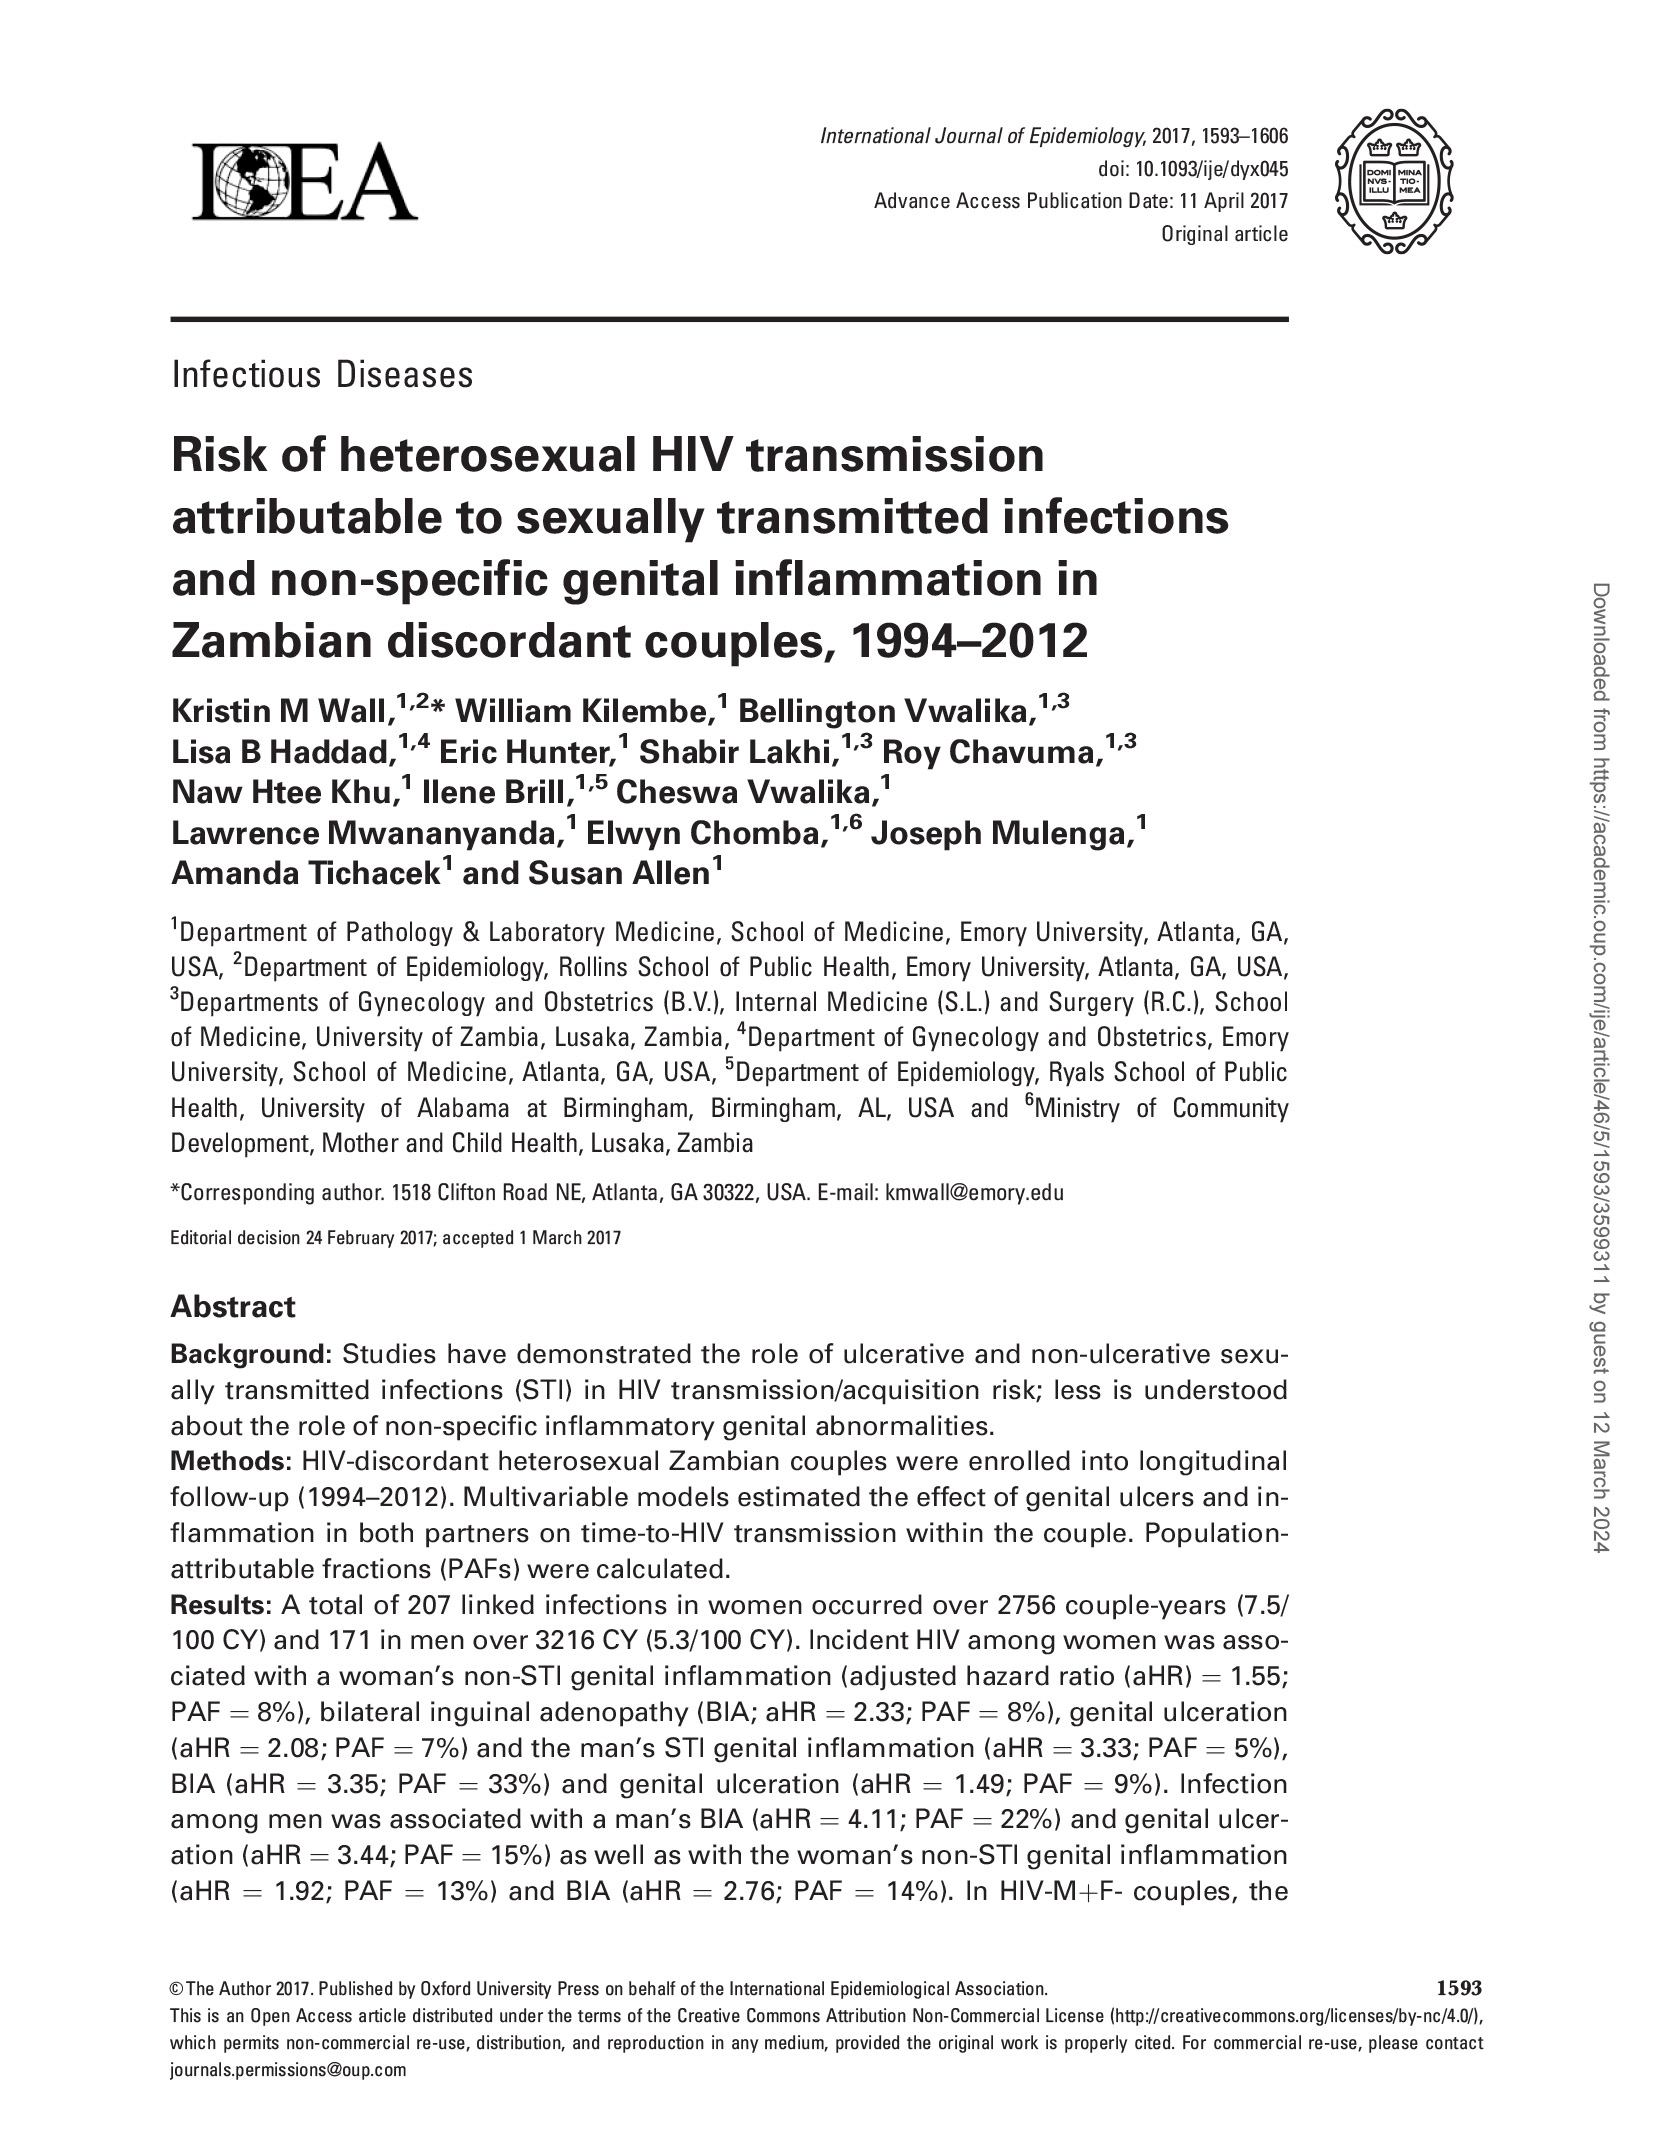 Riesgo de transmisión heterosexual del VIH atribuible a infecciones de transmisión sexual e inflamación genital no específica en parejas discordantes de Zambia - portada